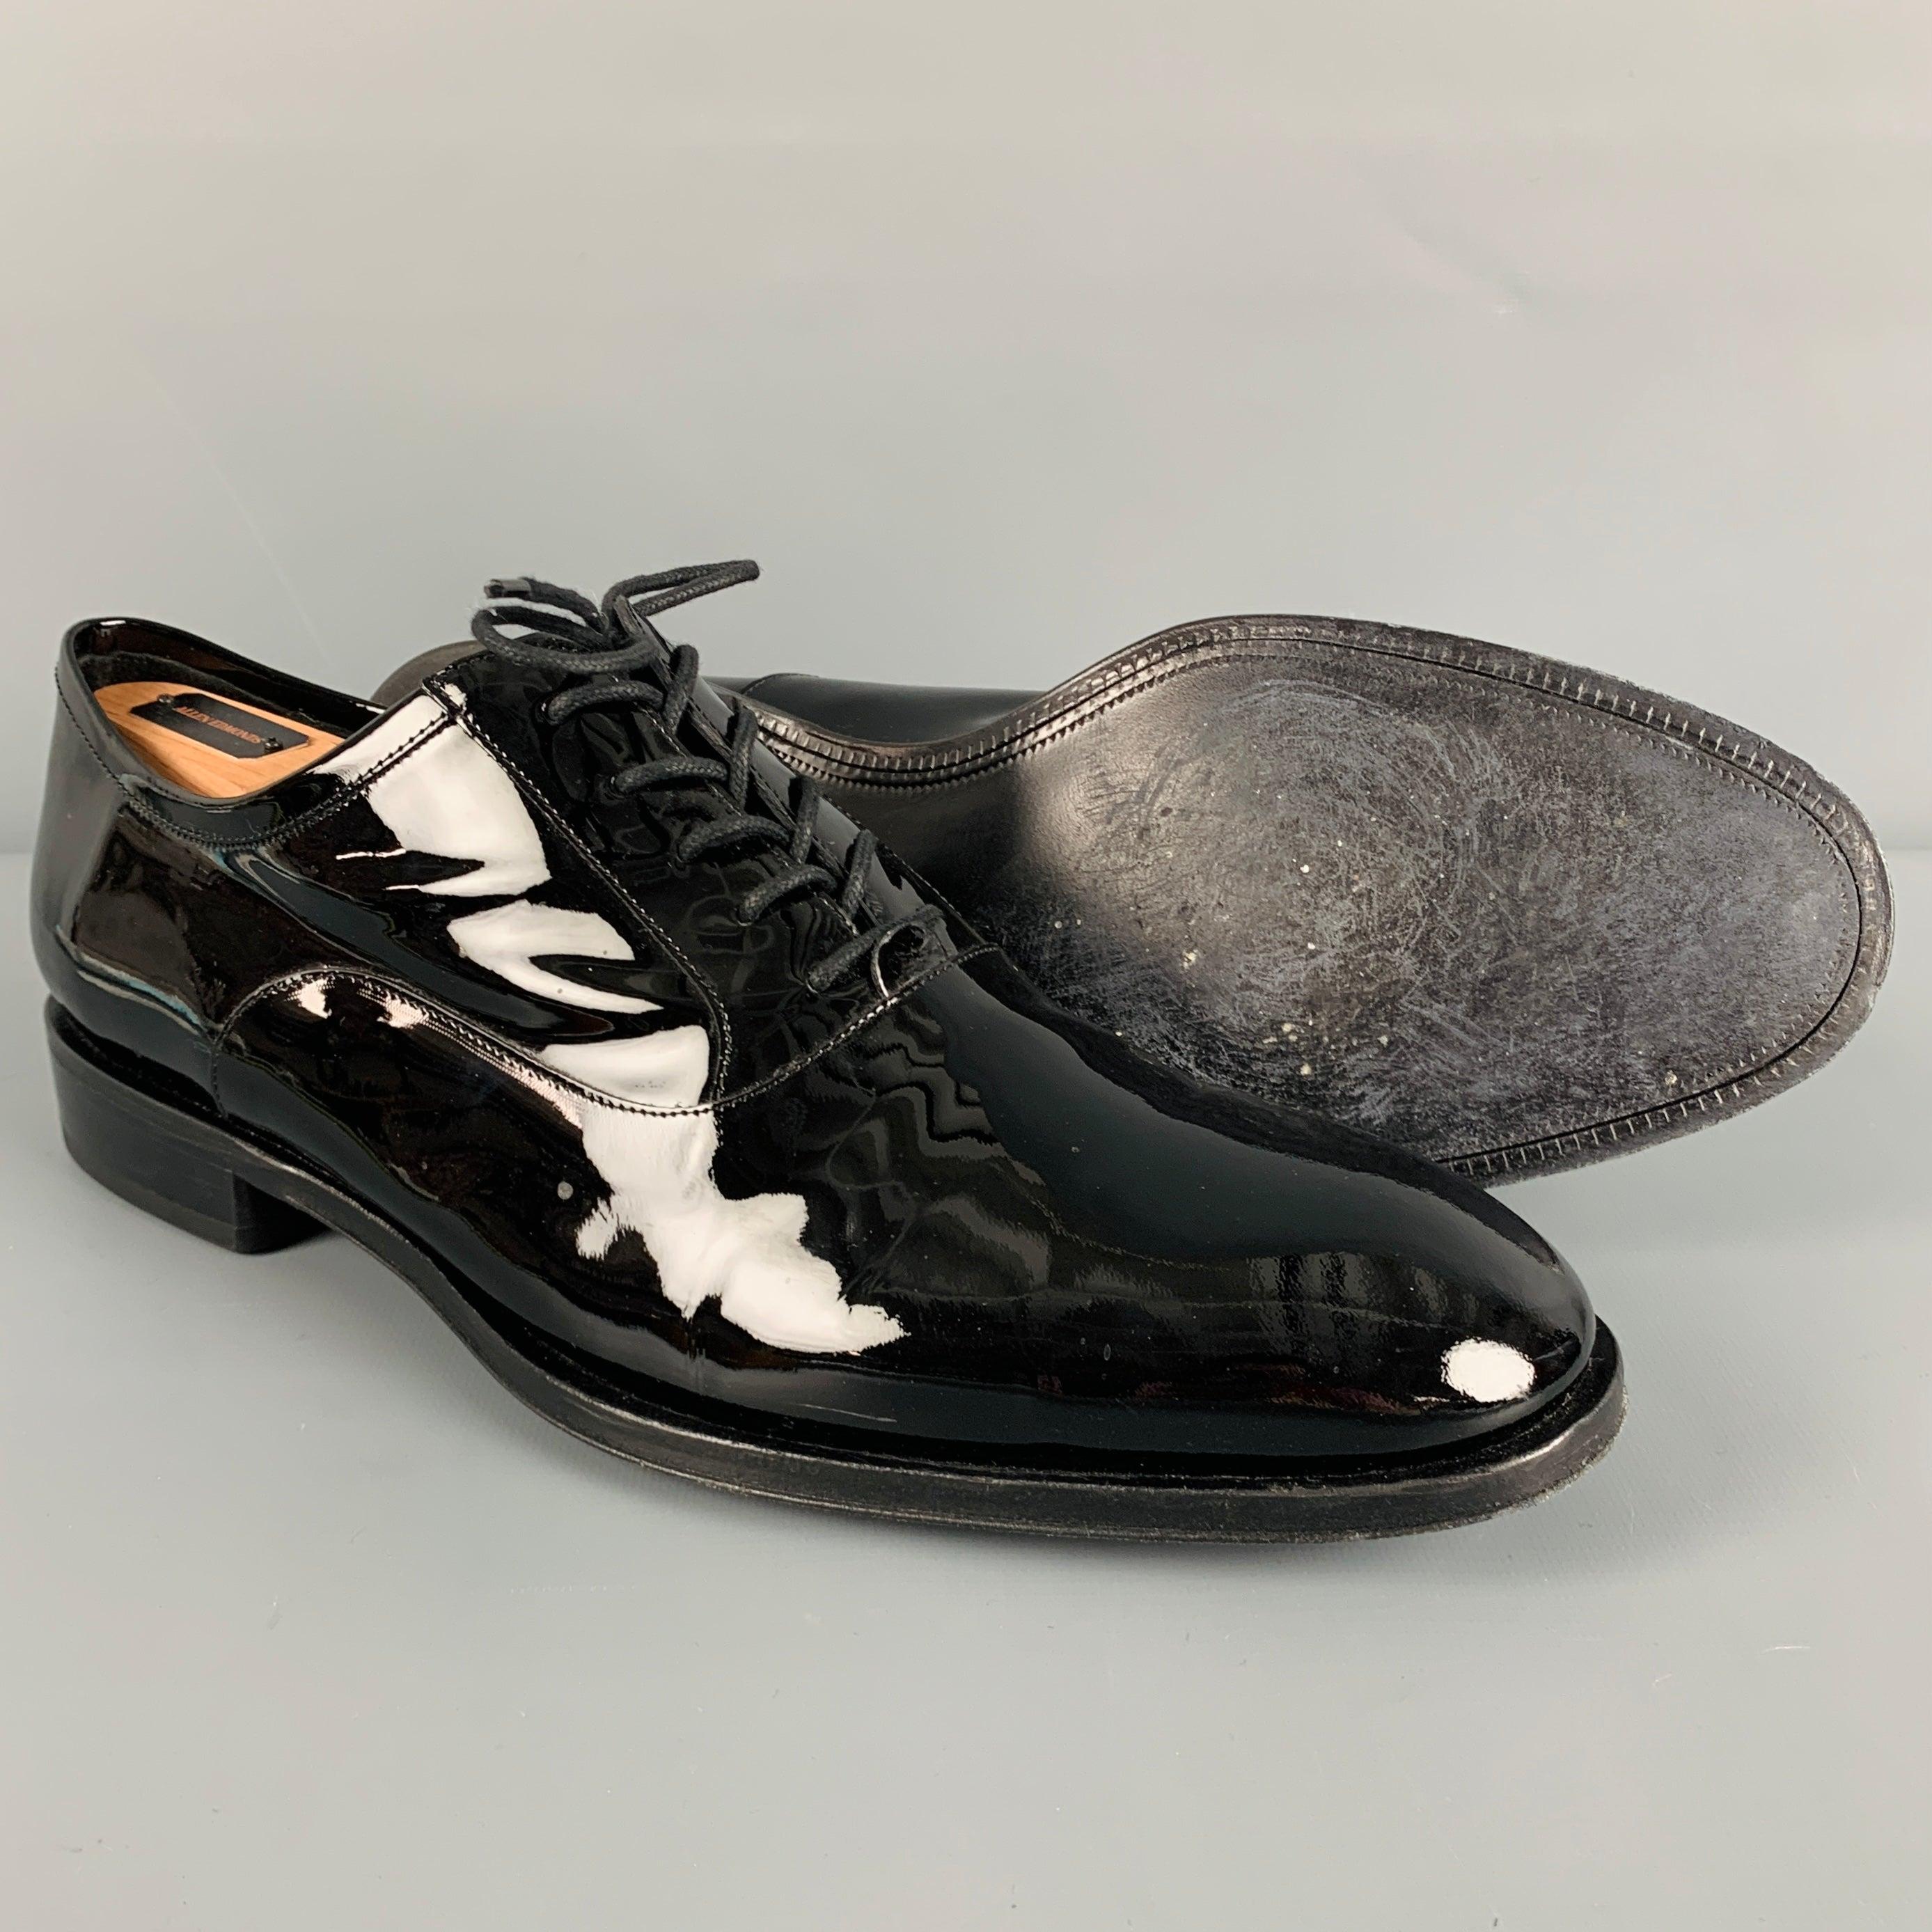 ALLEN EDMONDS Size 11 Black Patent Leather Lace-Up Shoes For Sale 1